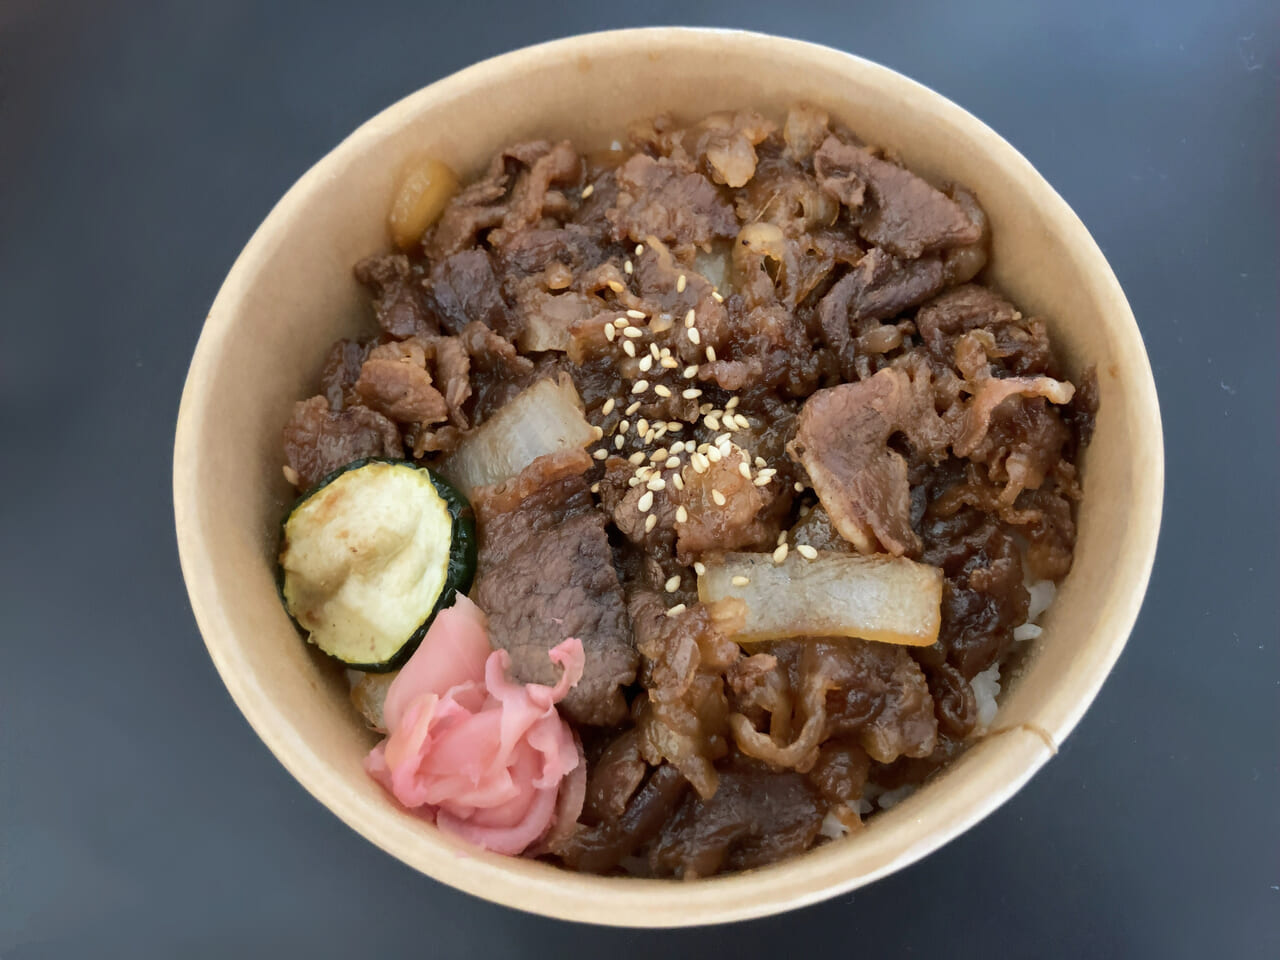 テレビ番組「ももち浜ストア」でも取り上げられた、肉料理が人気のお店「肉バル ノダニク」は、JR箱崎駅西口より徒歩で約2分、市営地下鉄箱崎宮前駅より徒歩で約14分の距離にあります。